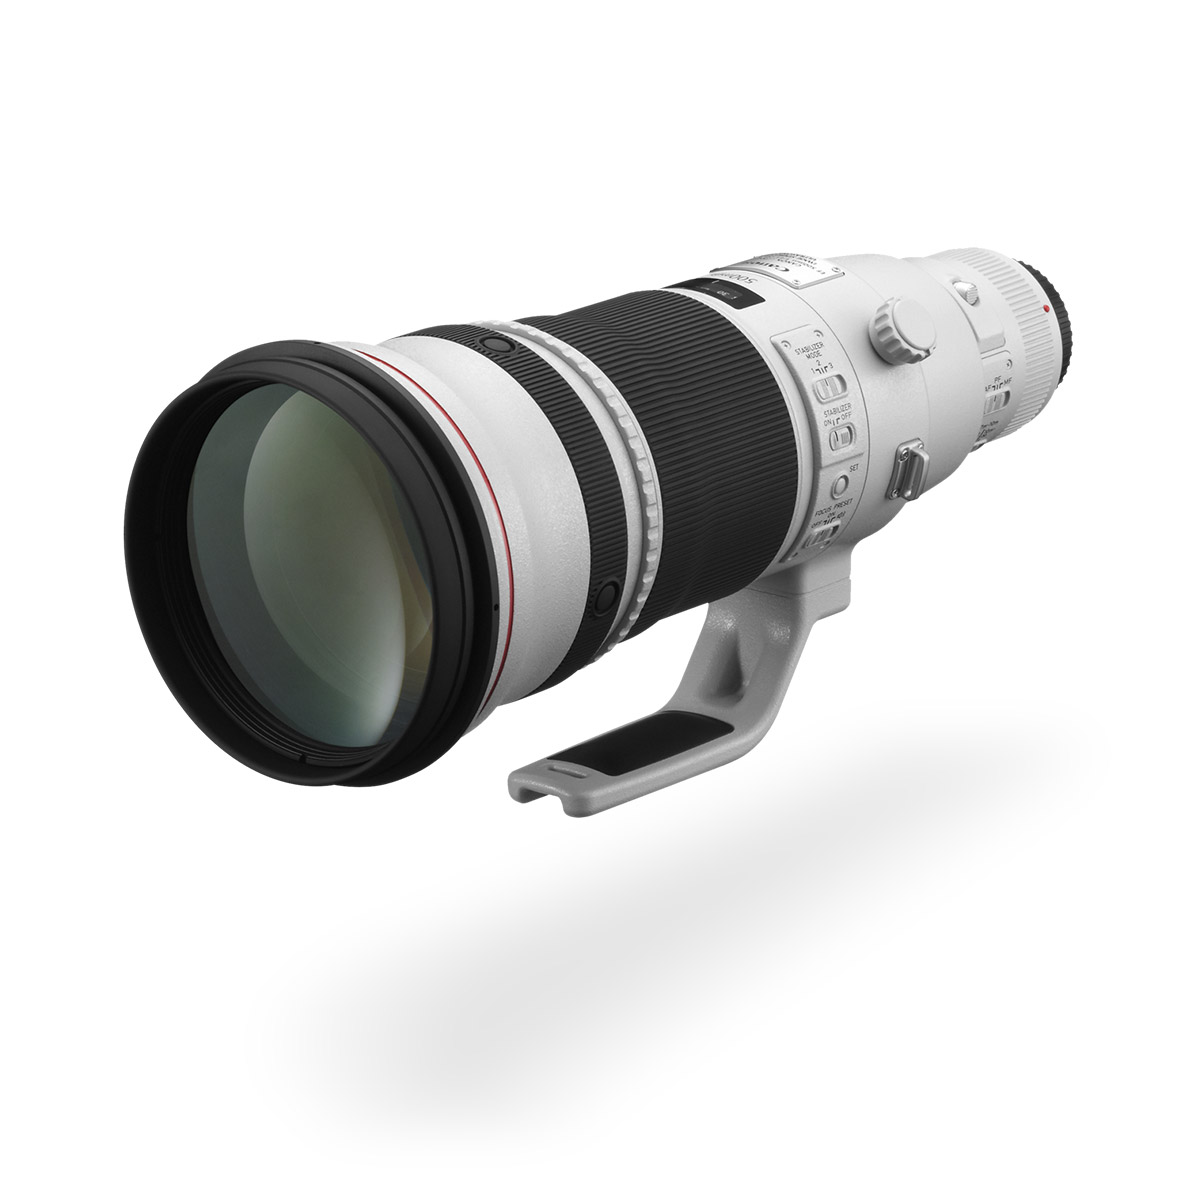 EF 500mm f/4L IS II USM lens